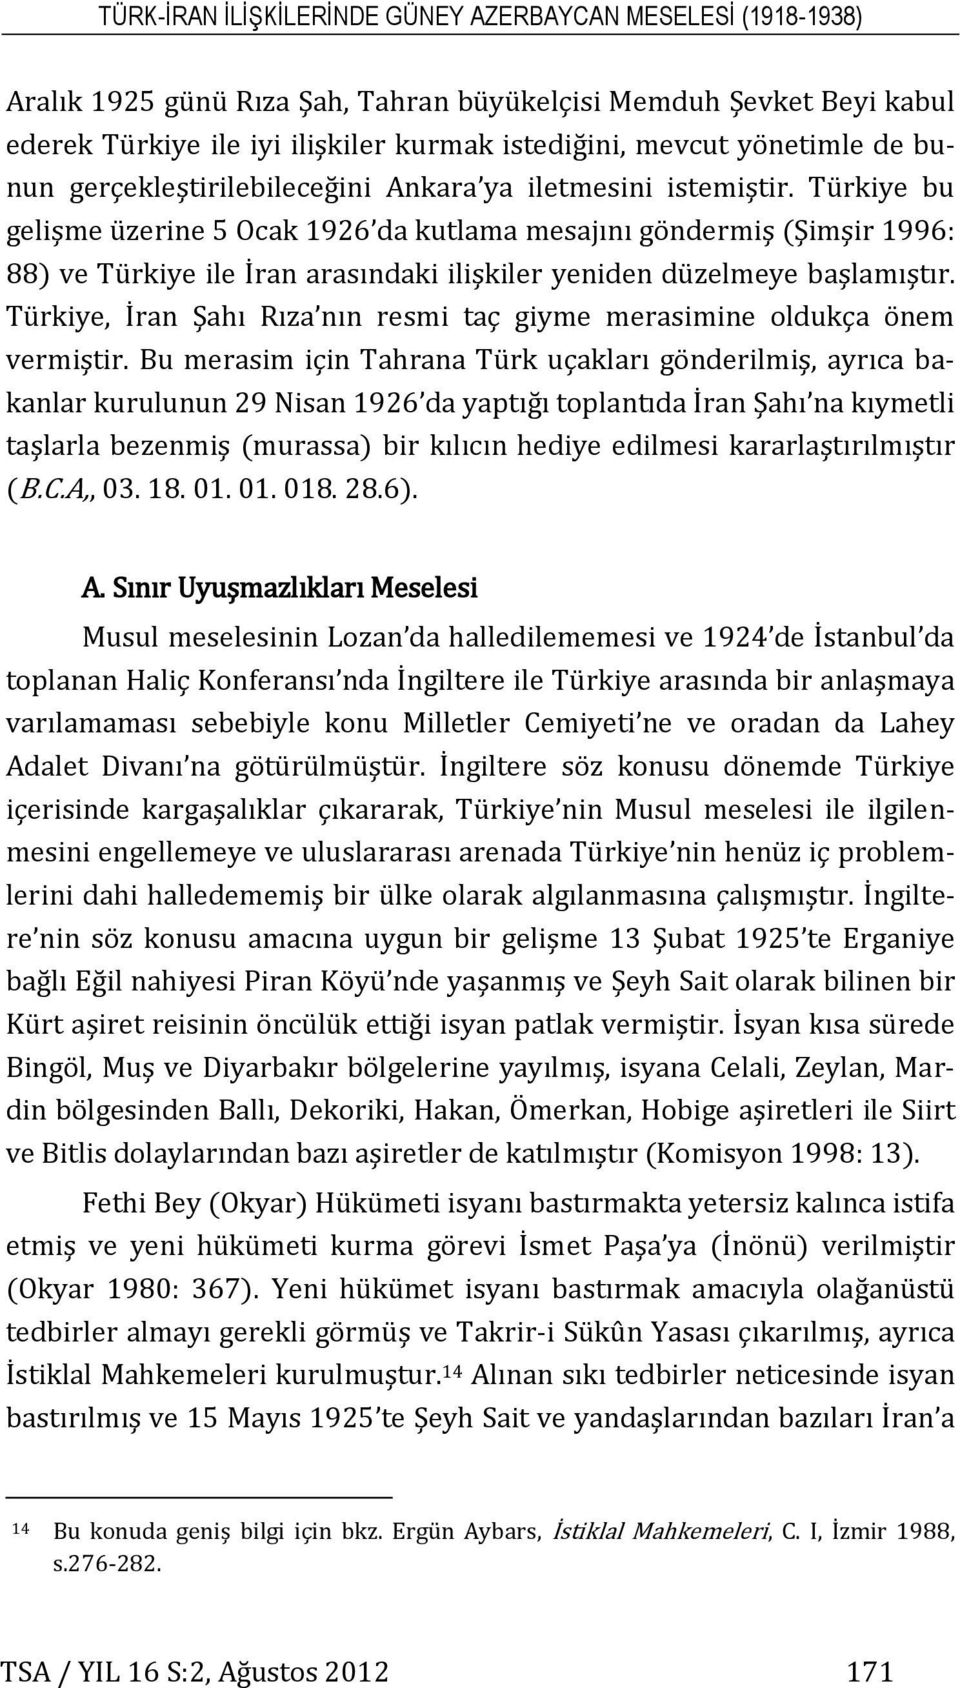 Türkiye bu gelişme üzerine 5 Ocak 1926 da kutlama mesajını göndermiş (Şimşir 1996: 88) ve Türkiye ile İran arasındaki ilişkiler yeniden düzelmeye başlamıştır.